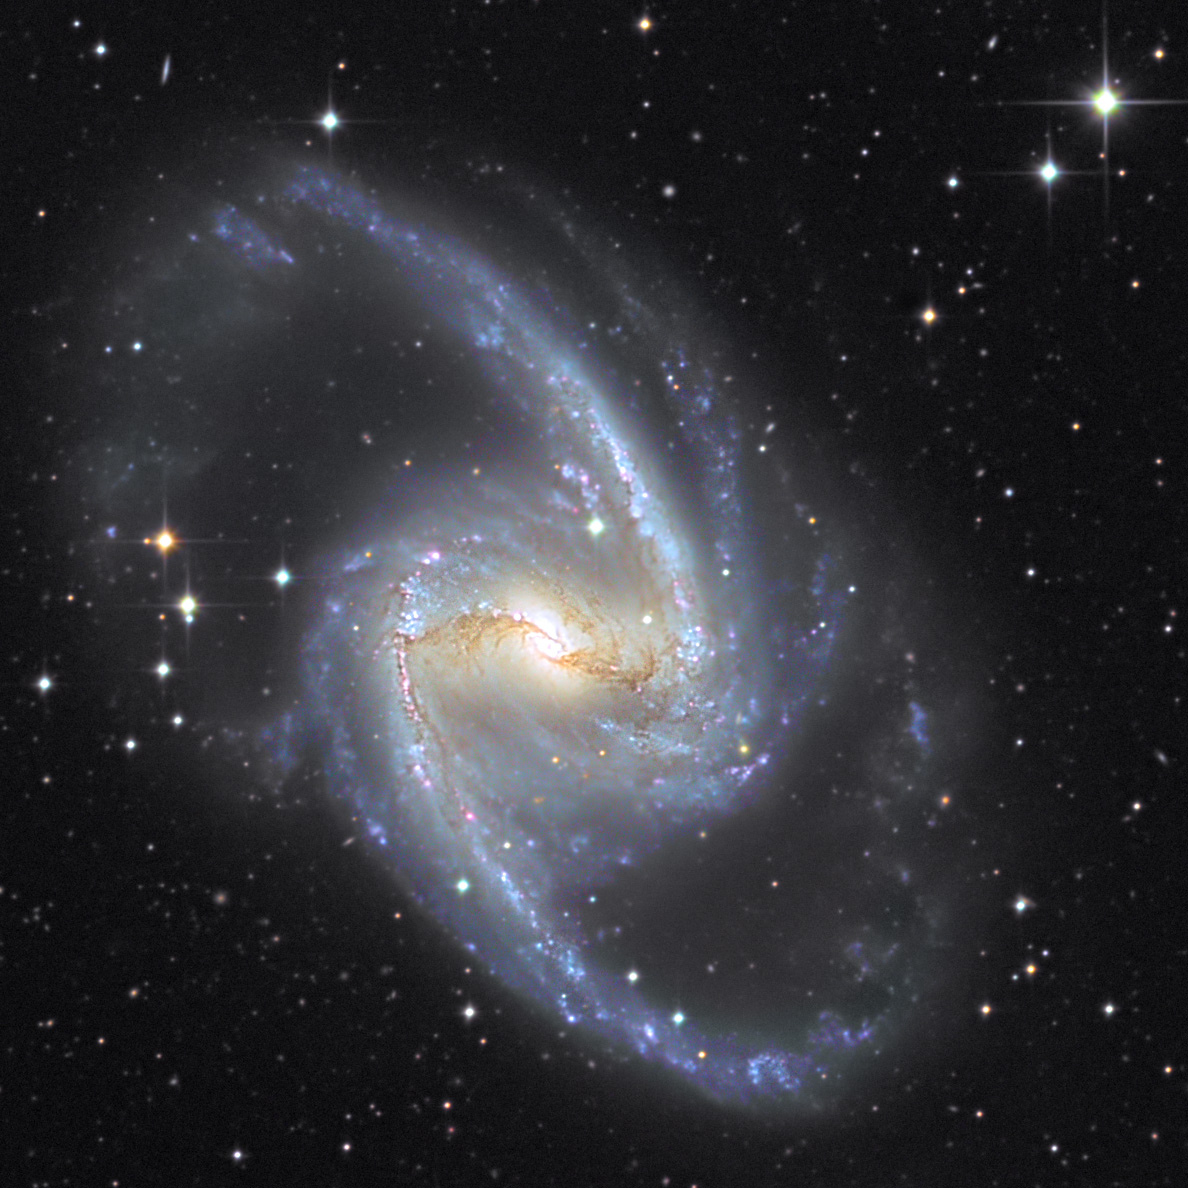 6005e746df74f_NGC1365_C_AB_TACRGB_TG_crop.jpg.3d909d381d8eb5fa972873f8a802947e.jpg